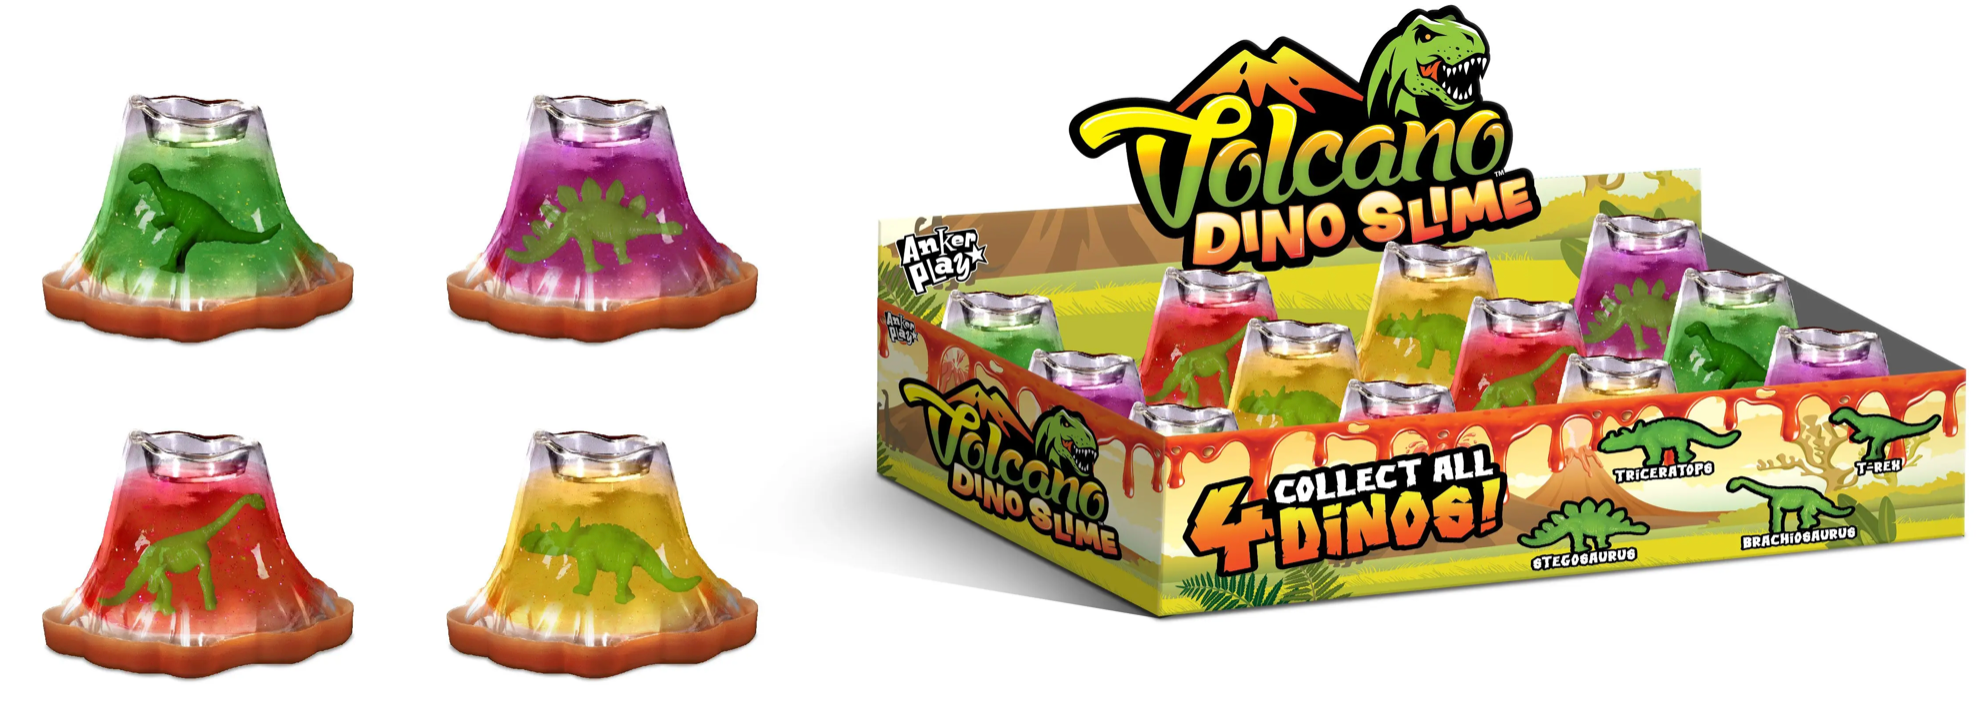 Volcano Dino Slime